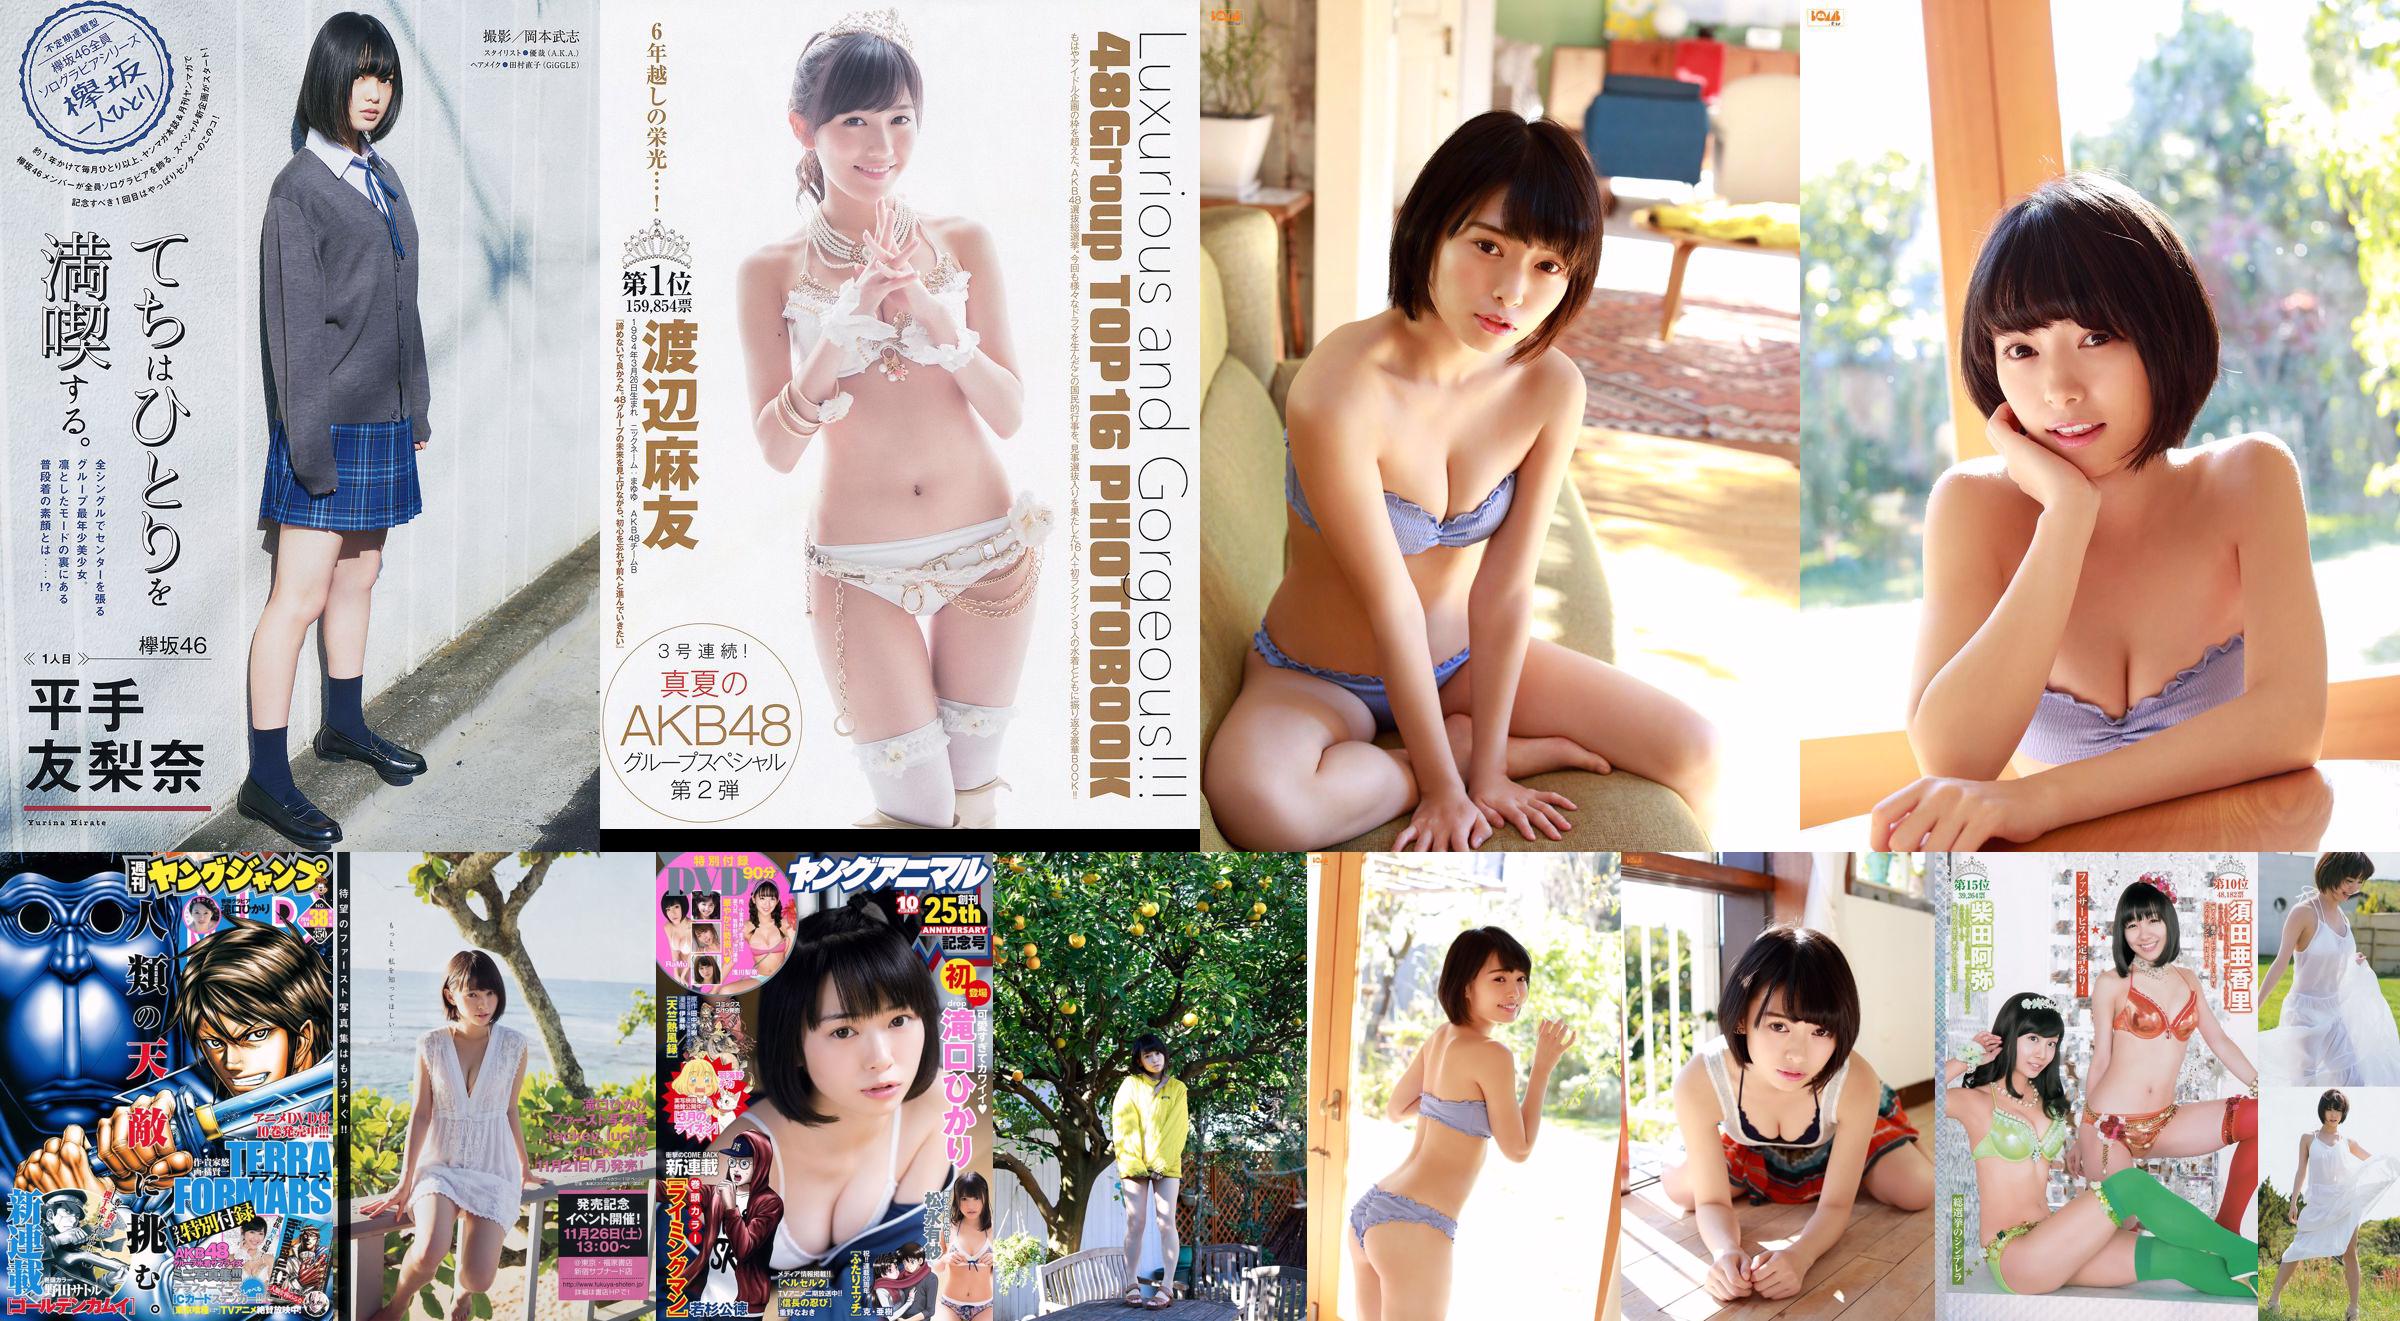 Hikari Takiguchi Hinako Kinoshita AKB48 Nonoka Ono [Wekelijkse jonge sprong] 2014 nr. 38 foto No.32e234 Pagina 1